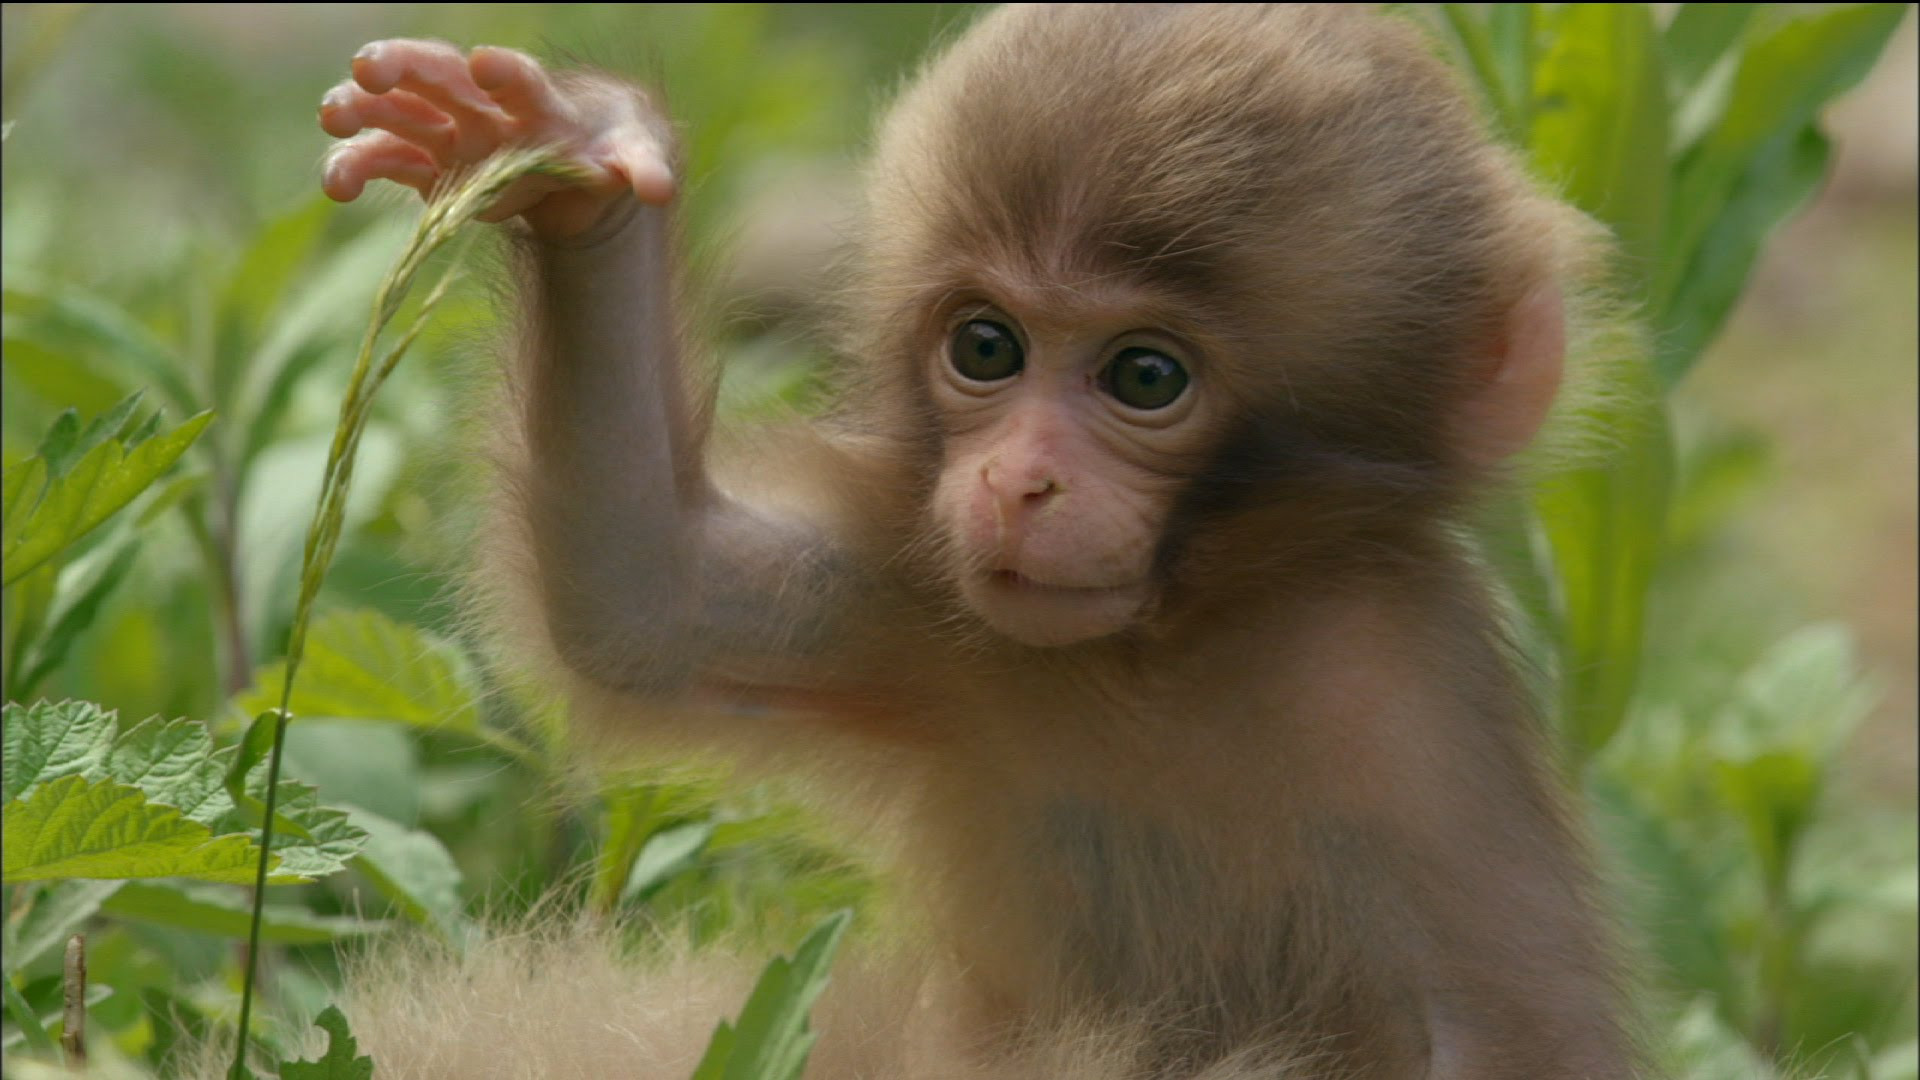 Cute Baby Monkey Eats And Sleeps YouTube Unusual Images | ohidul.me